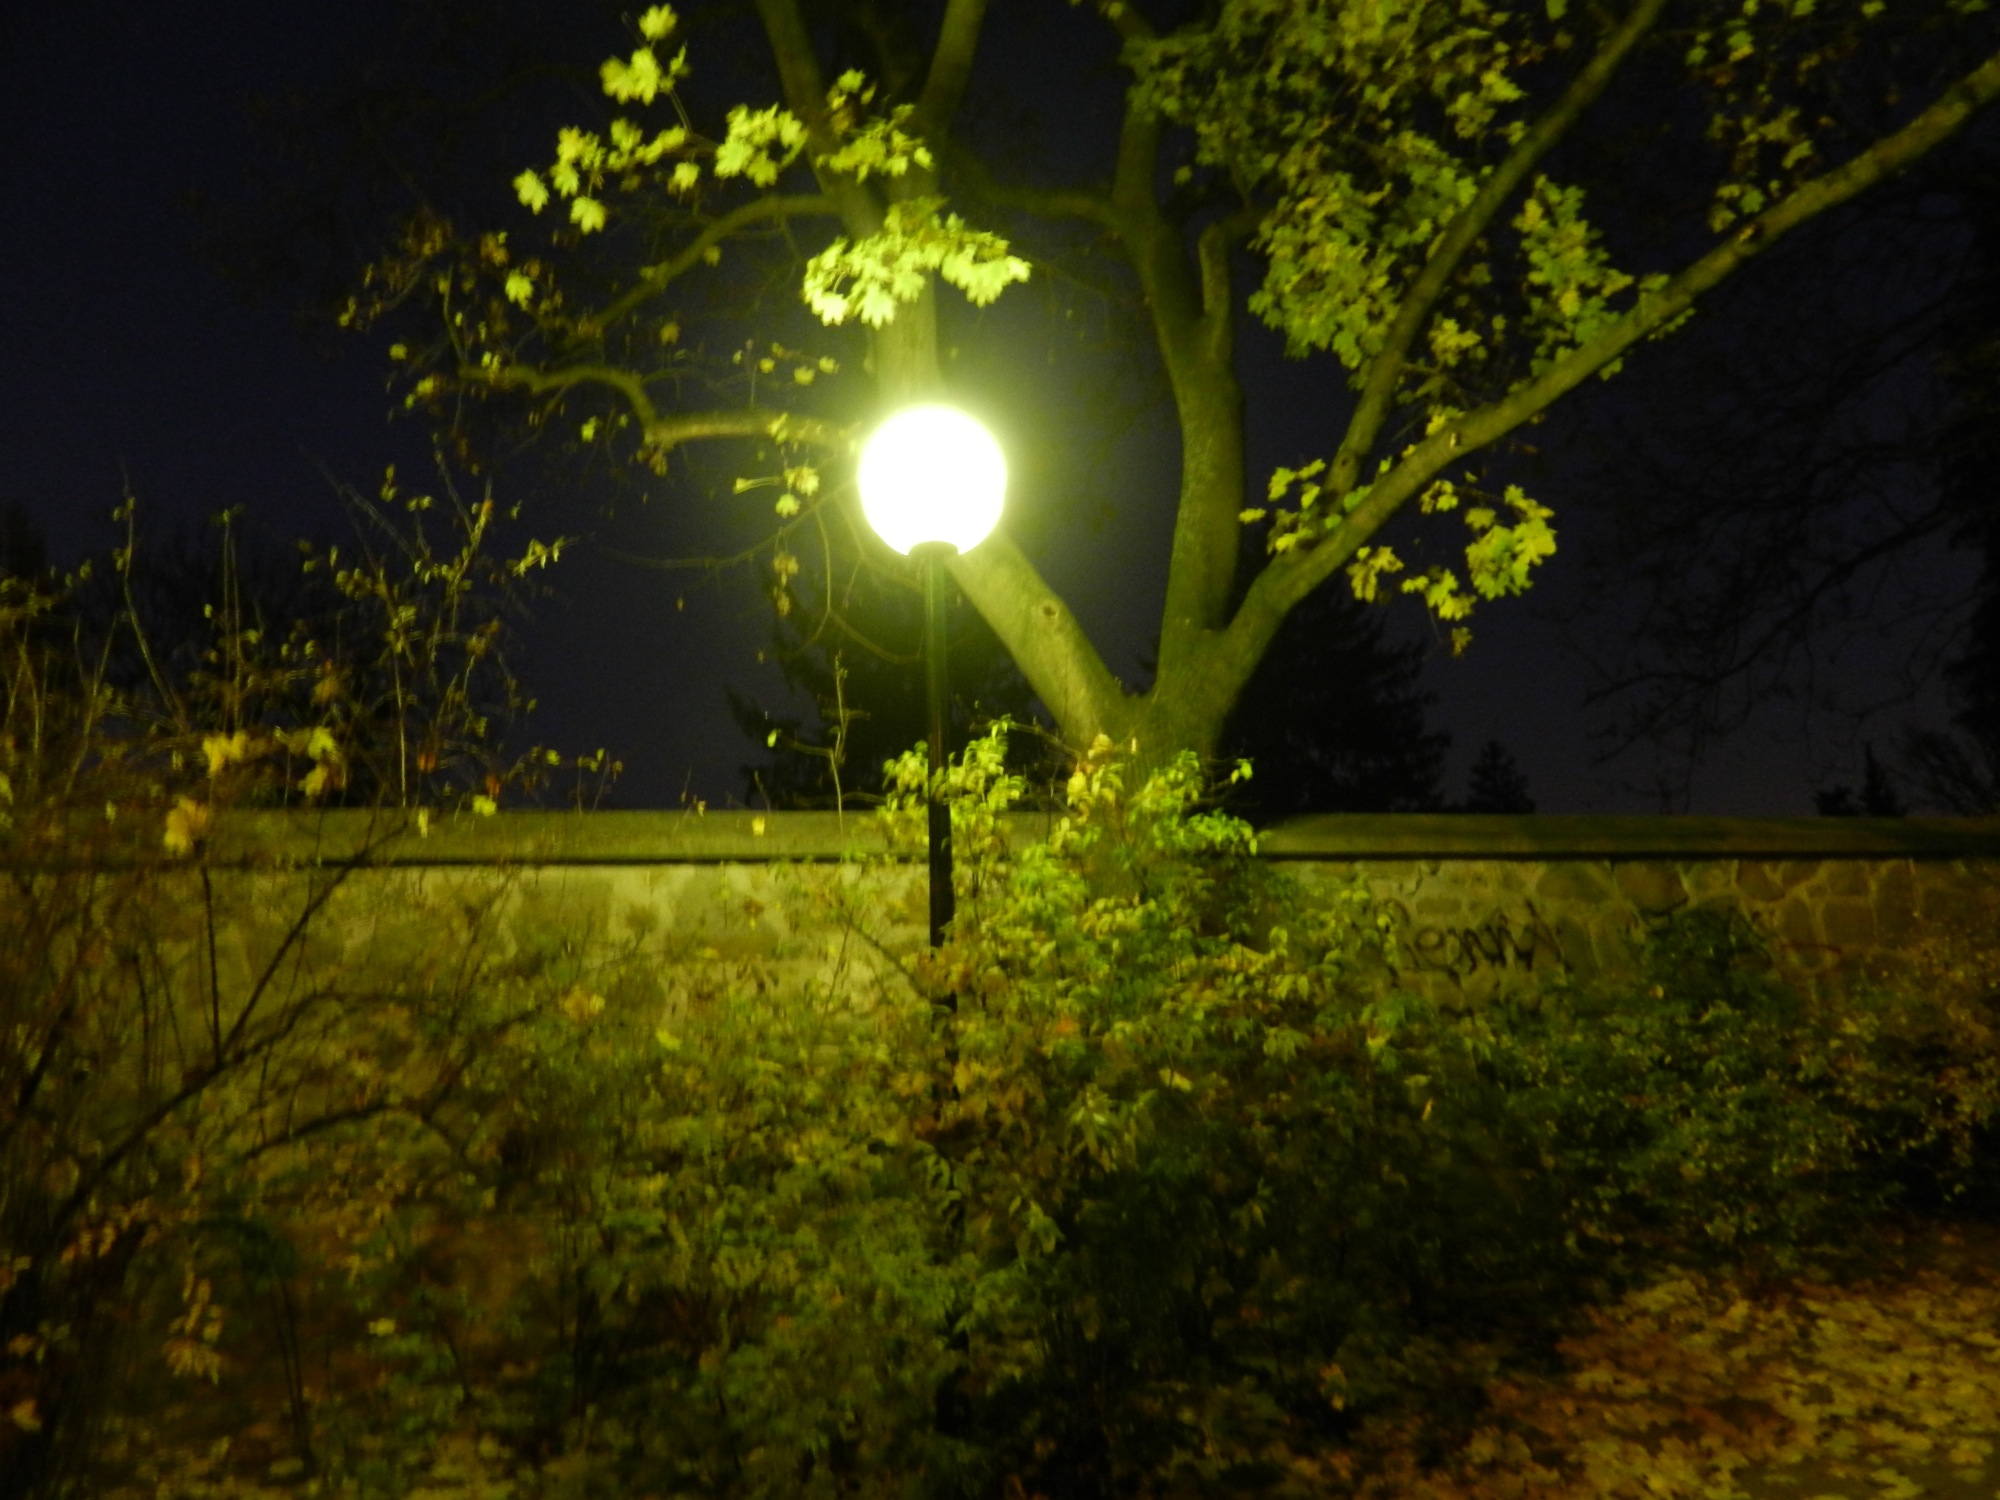 Lampe im Matzner Park, eher nicht farbecht, grünstichig